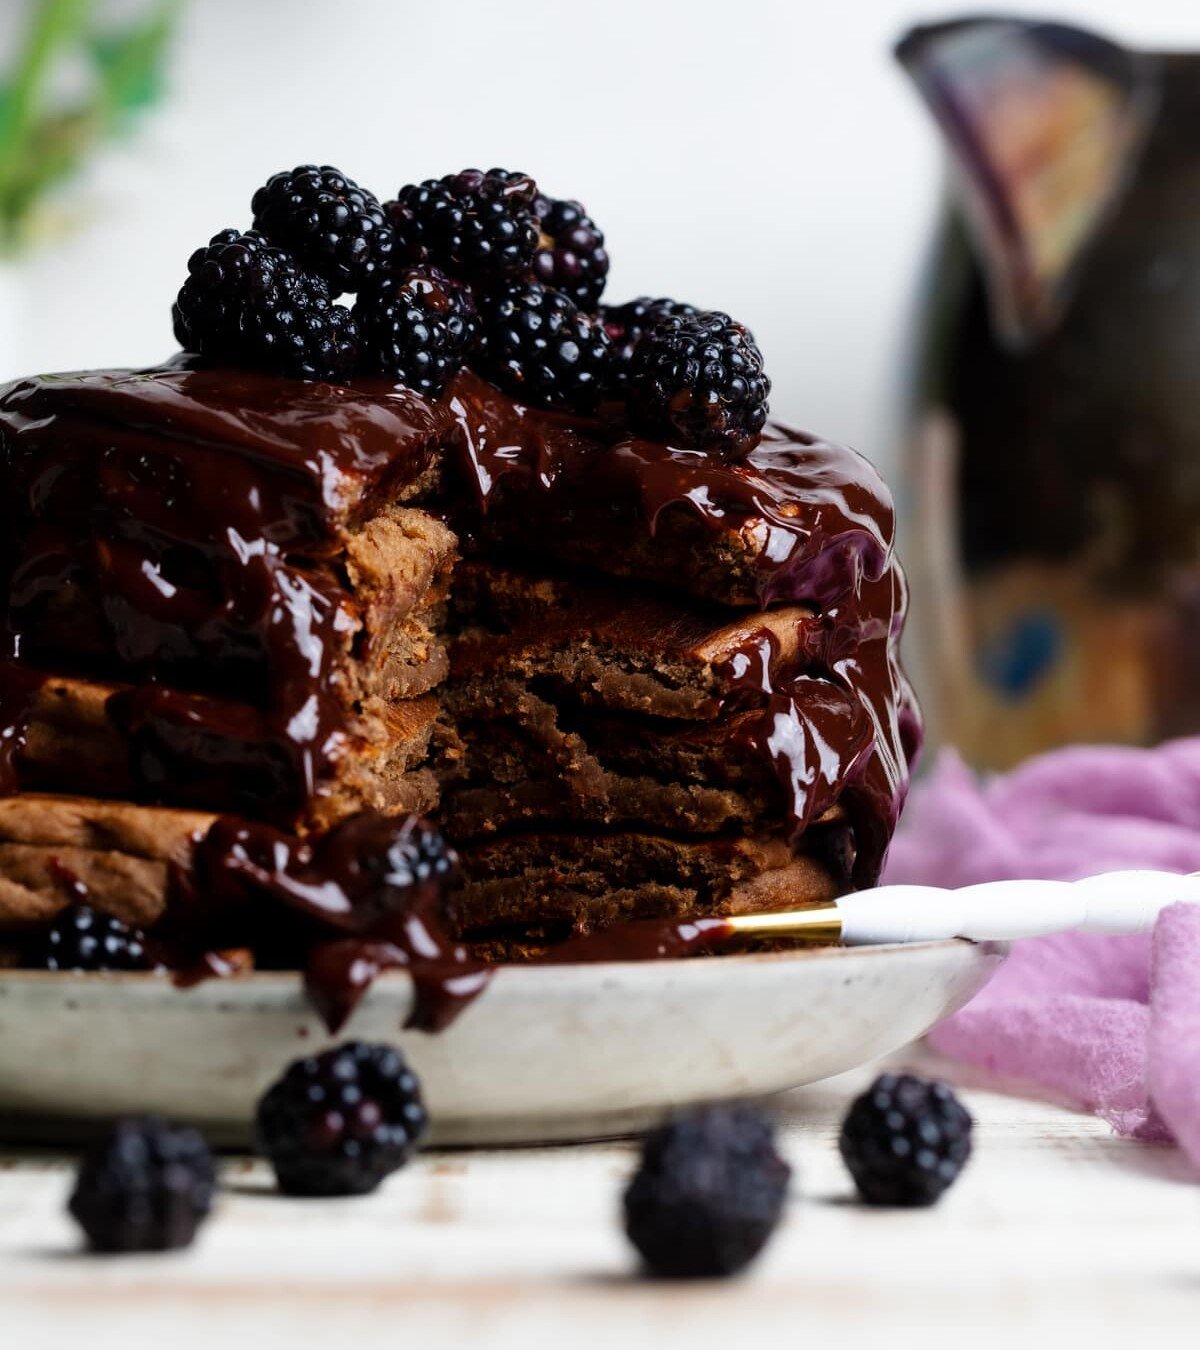 Vegan Chocolate Pancakes with Blackberries